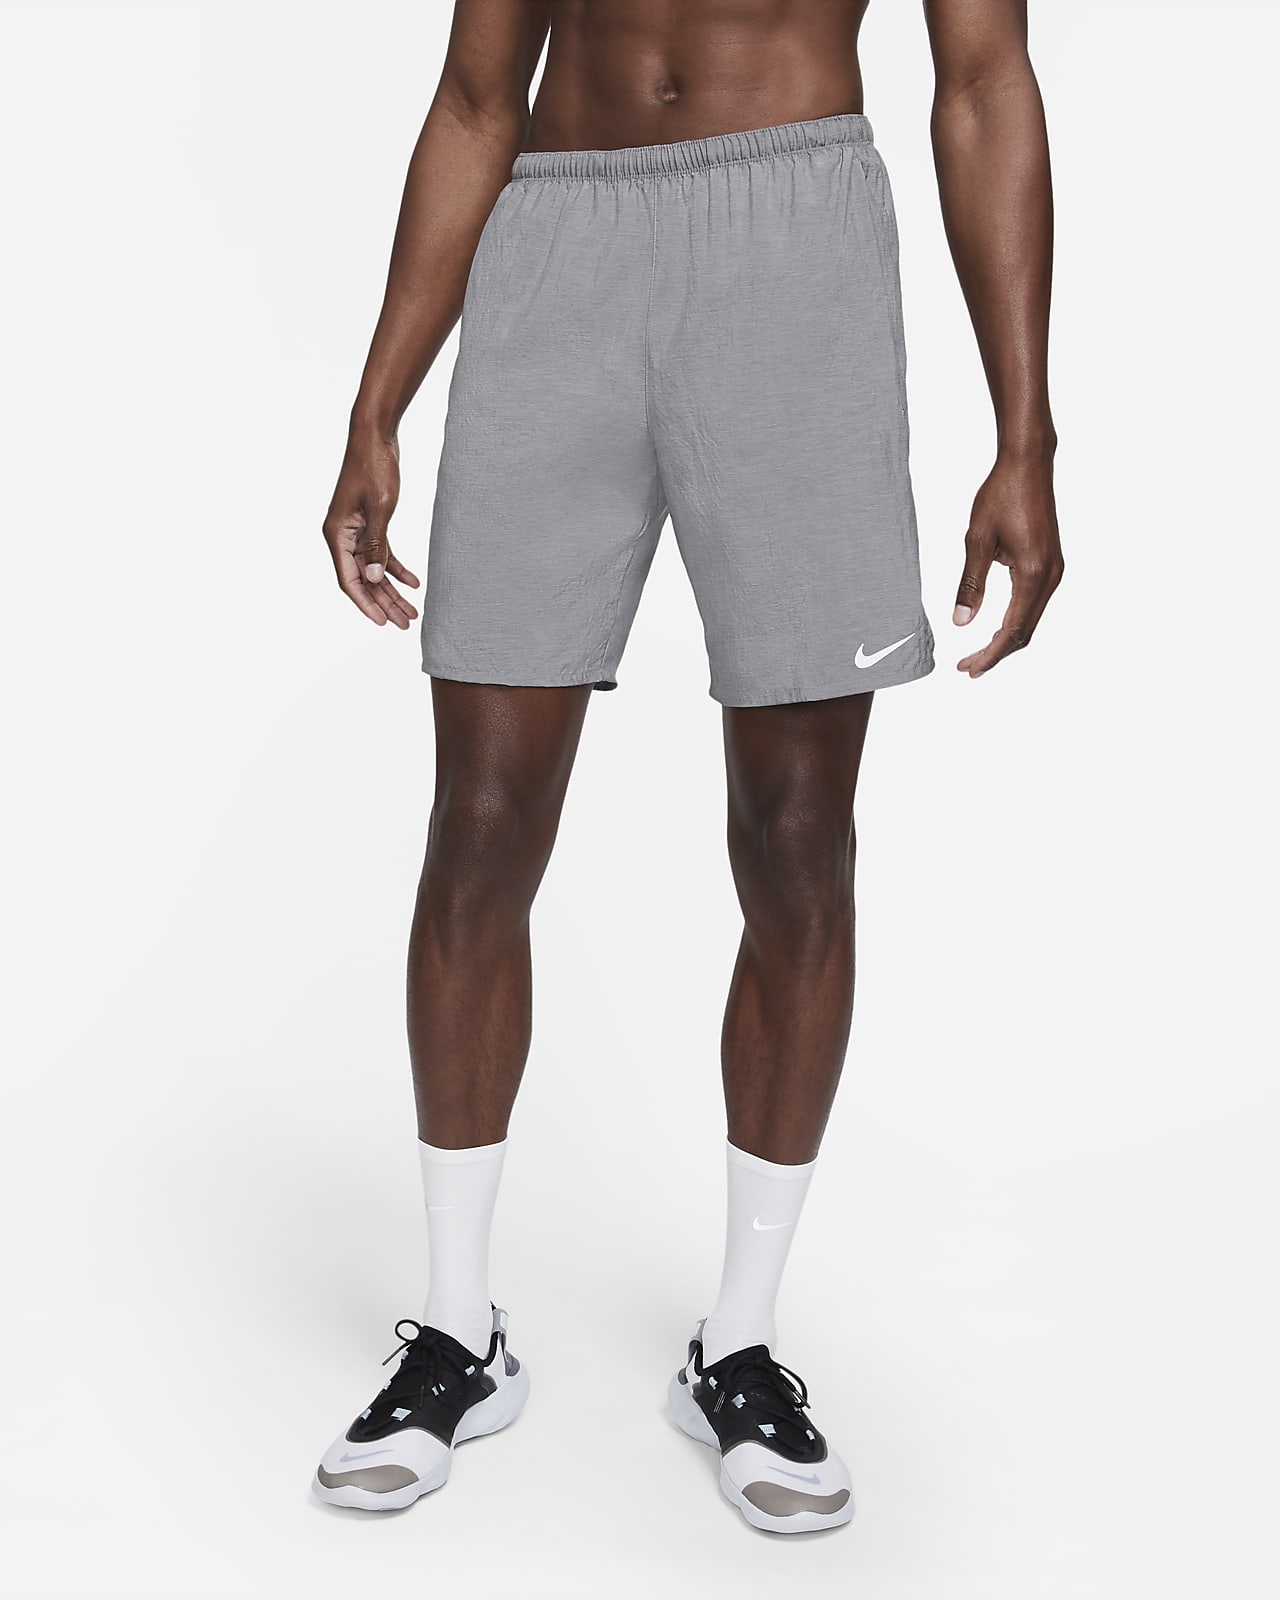 Short de running avec sous-short intégré Nike Challenger pour Homme